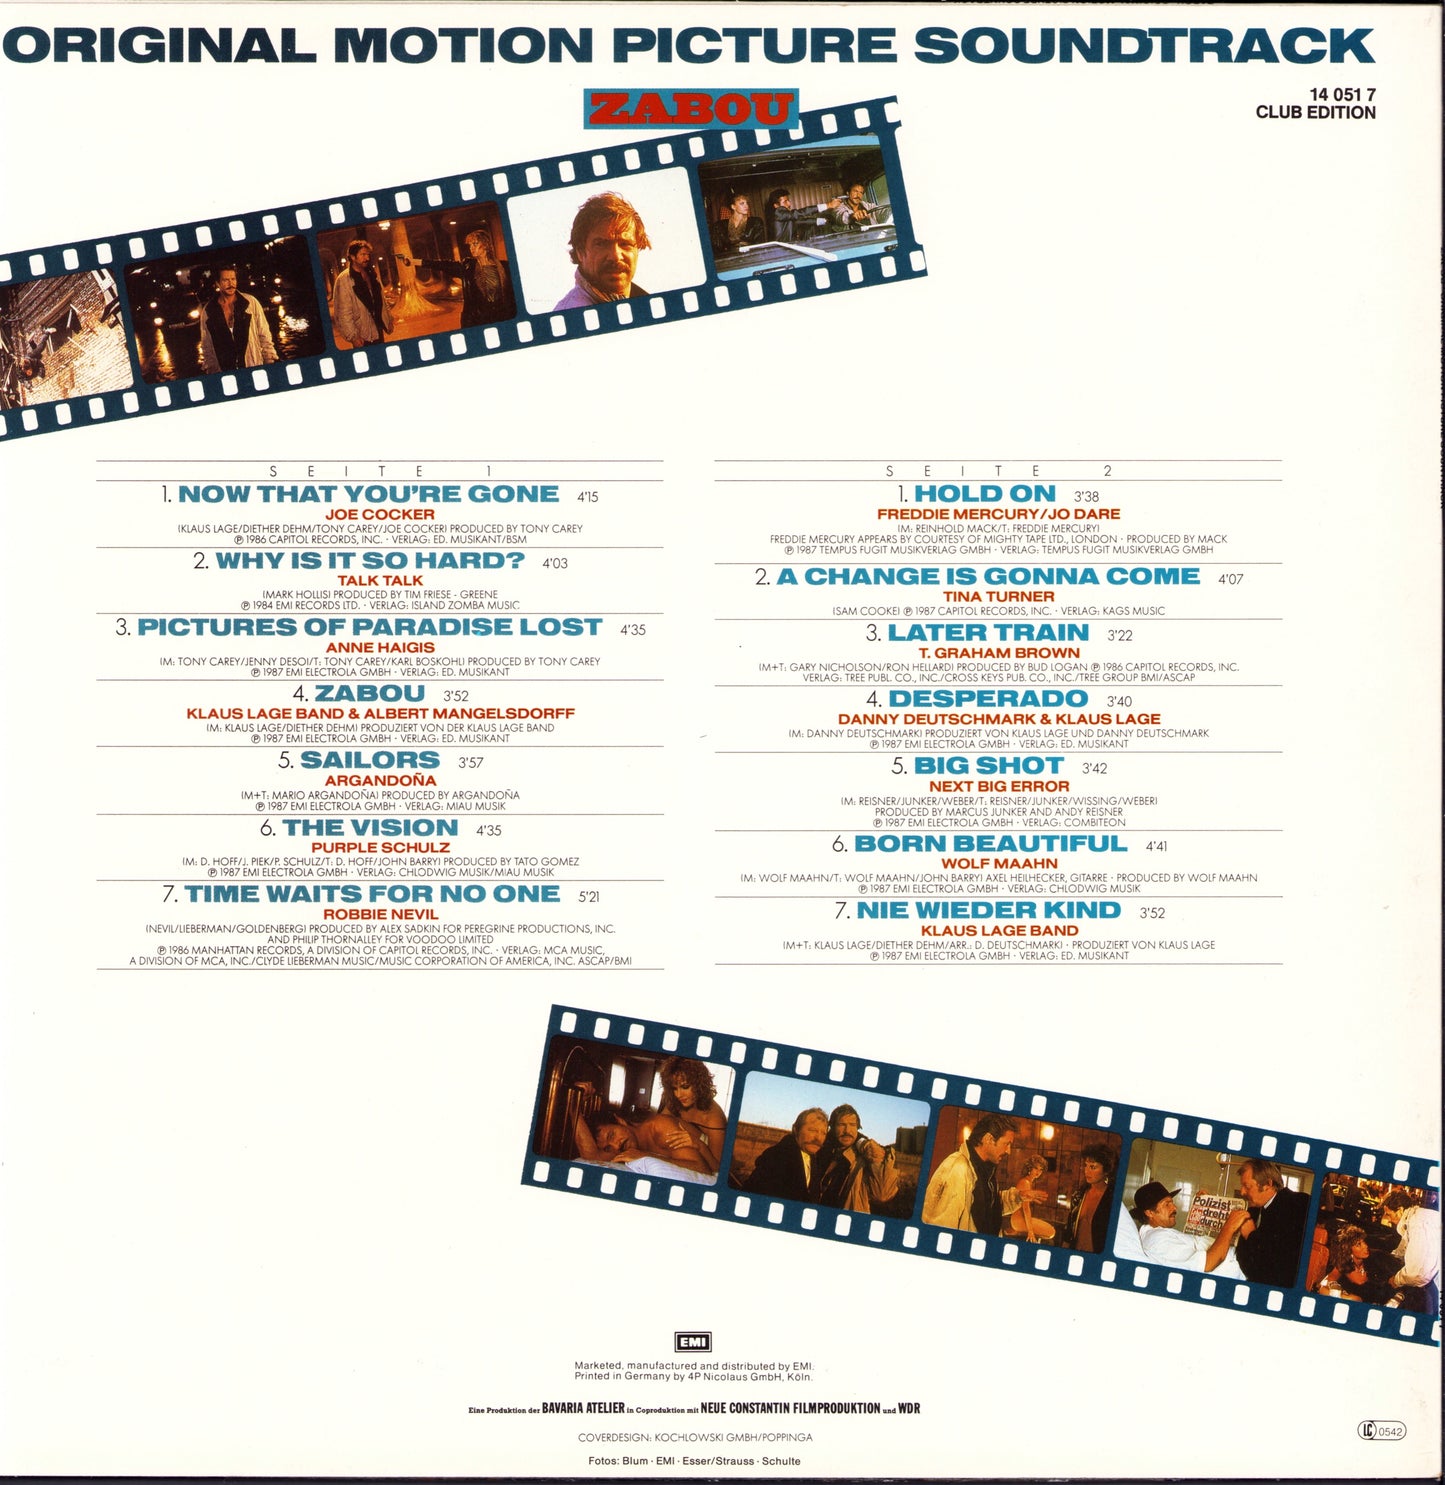 Zabou Original Motion Picture Soundtrack Vinyl LP Club Edition